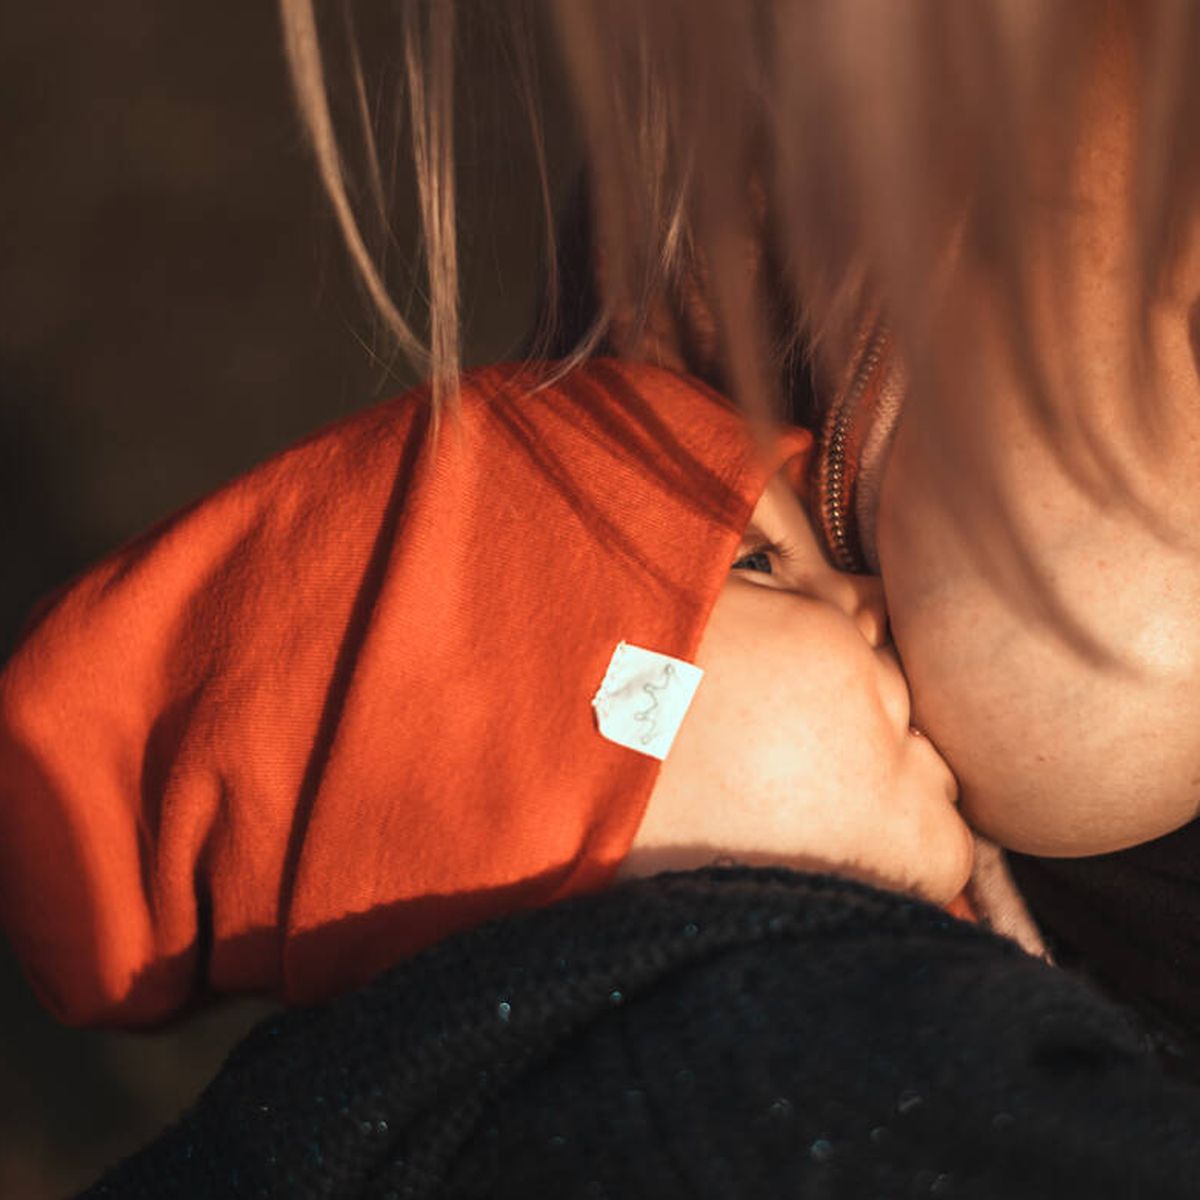 Tienda Multimarcas Caramelo - ¿Es recomendable el uso de pezoneras en la  lactancia materna?. No 🙅 👉Las pezoneras son usadas por muchas madres  porque sus bebés no agarran bien el seno materno